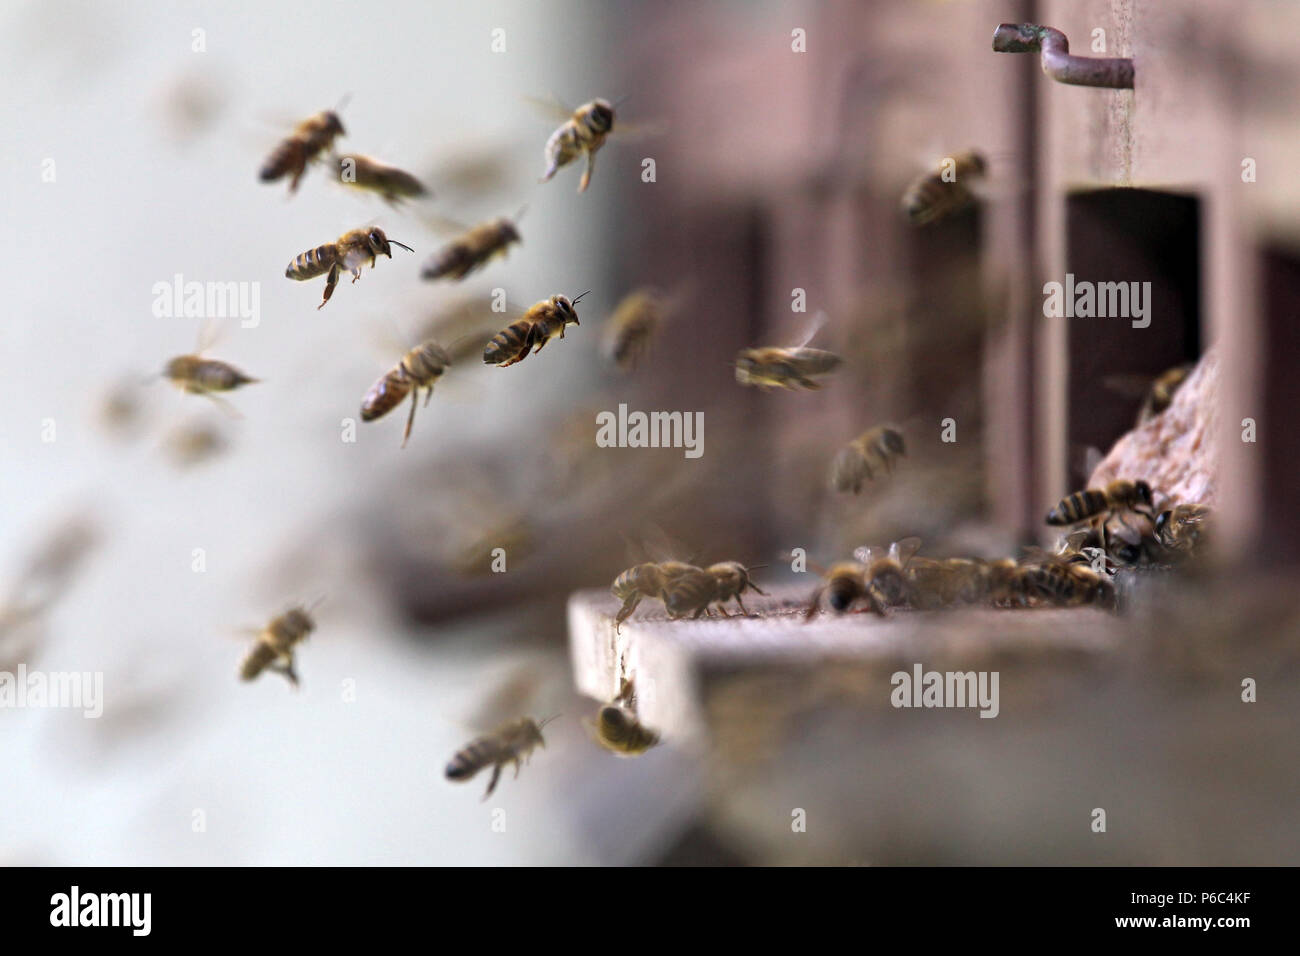 Graditz, Allemagne - les abeilles du miel qui approchent de leur ruche Banque D'Images